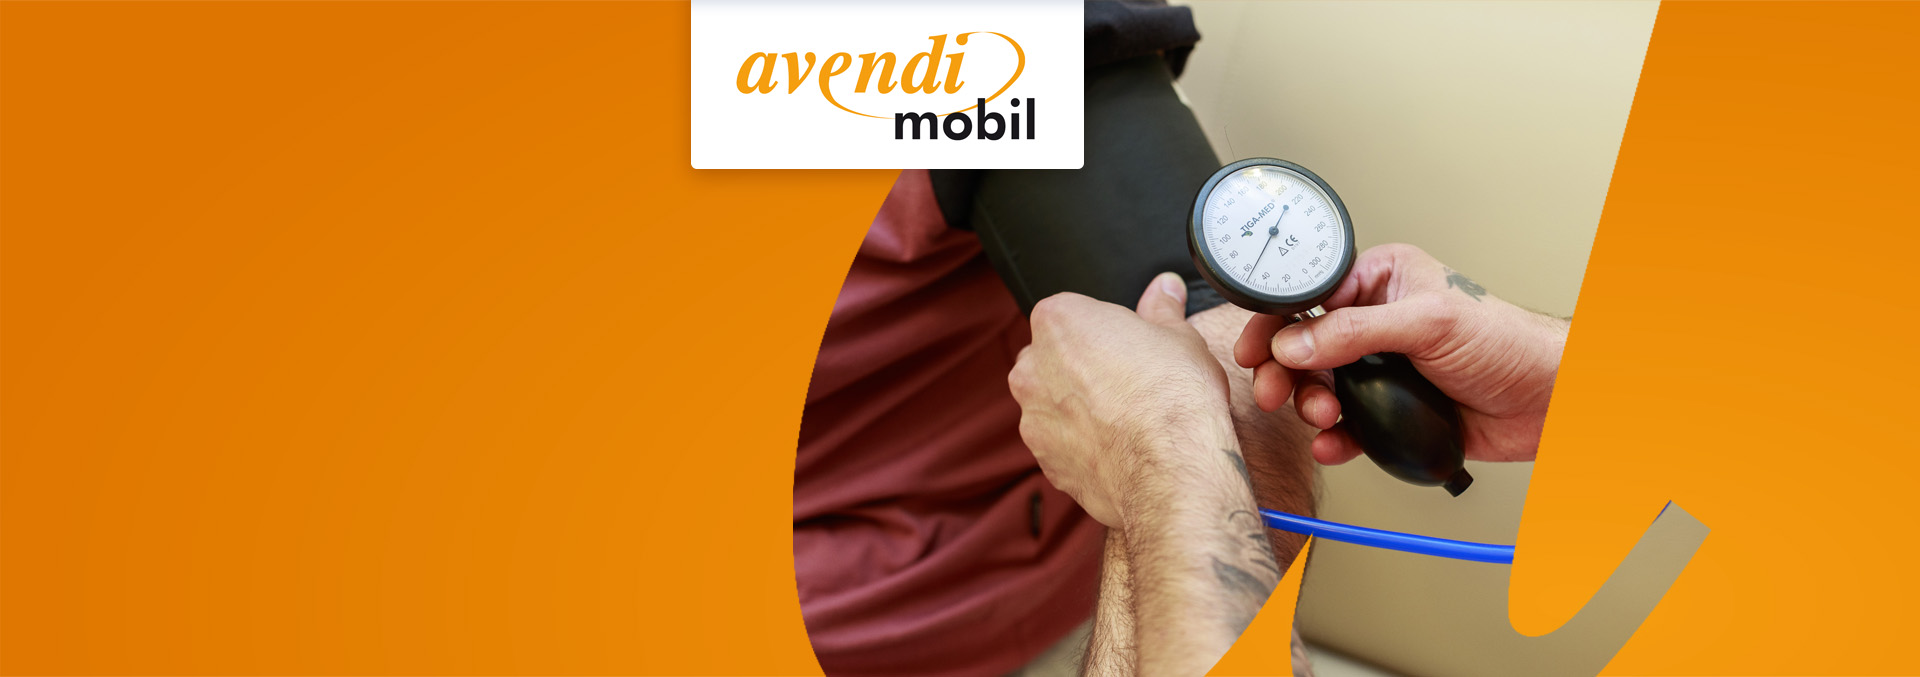 Blutdruckmessung gehört beim ambulanten Pflegedienst avendi mobil Mannheim zum pflegerischen Angebot.